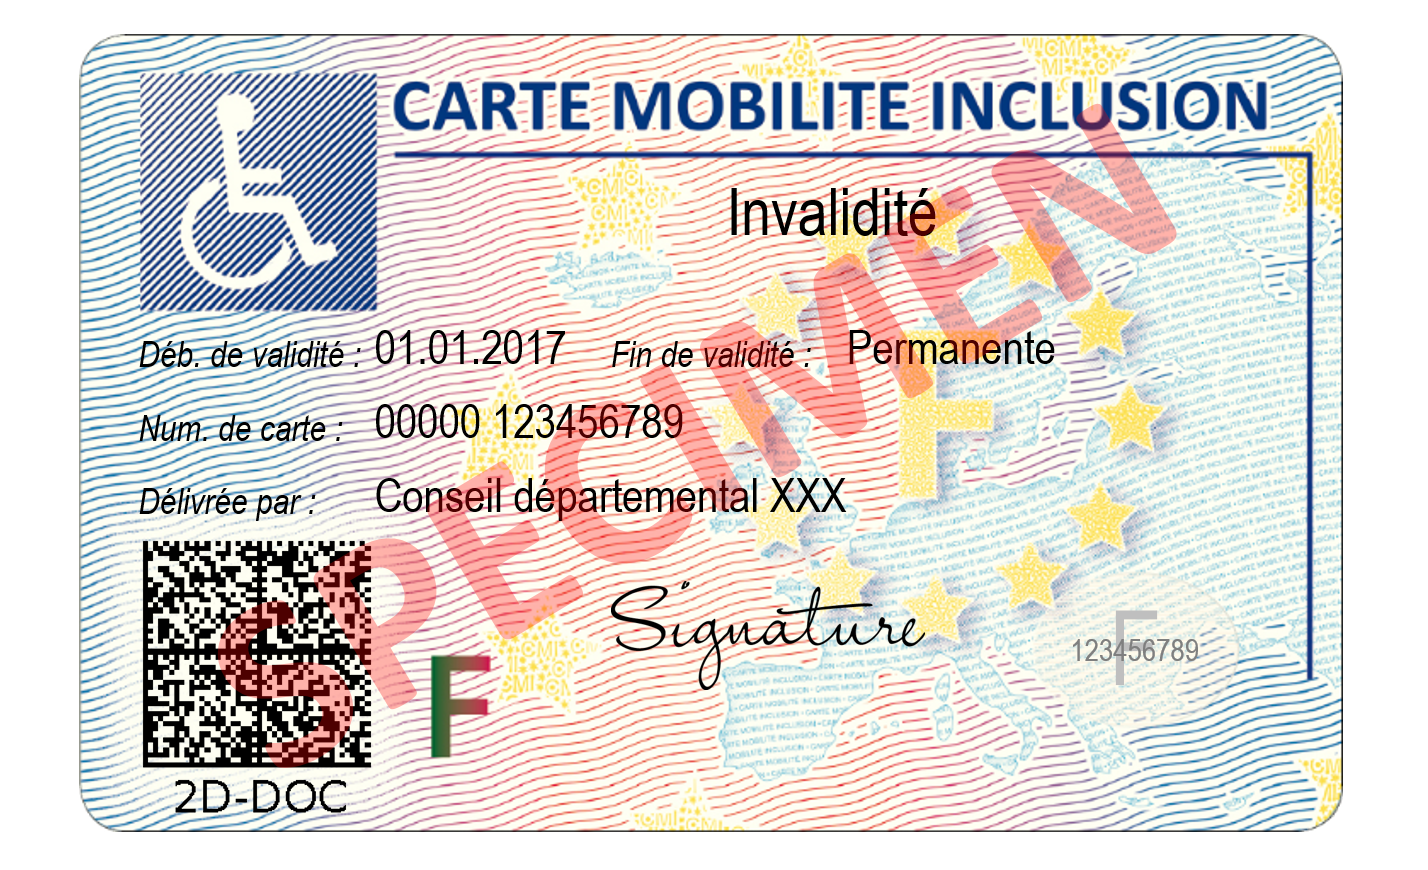 La carte mobilité inclusion (CMI) - Enfant différent